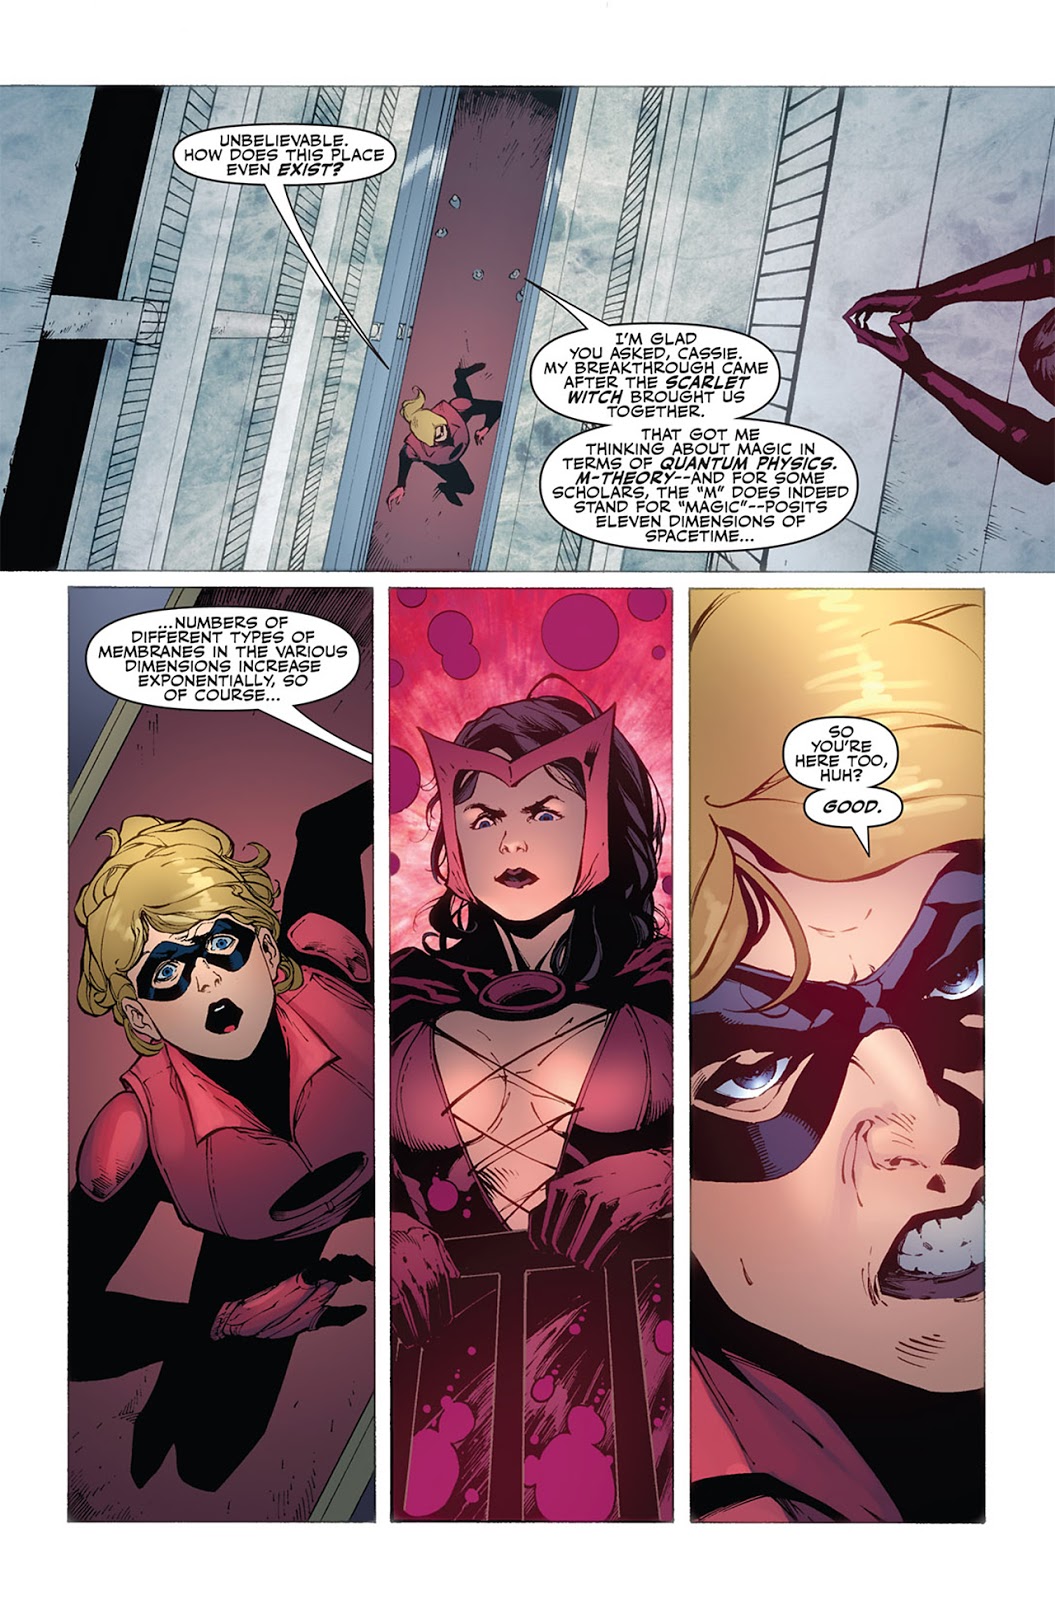 Odwołania naukowe w komiksach Marvela: M-teoria